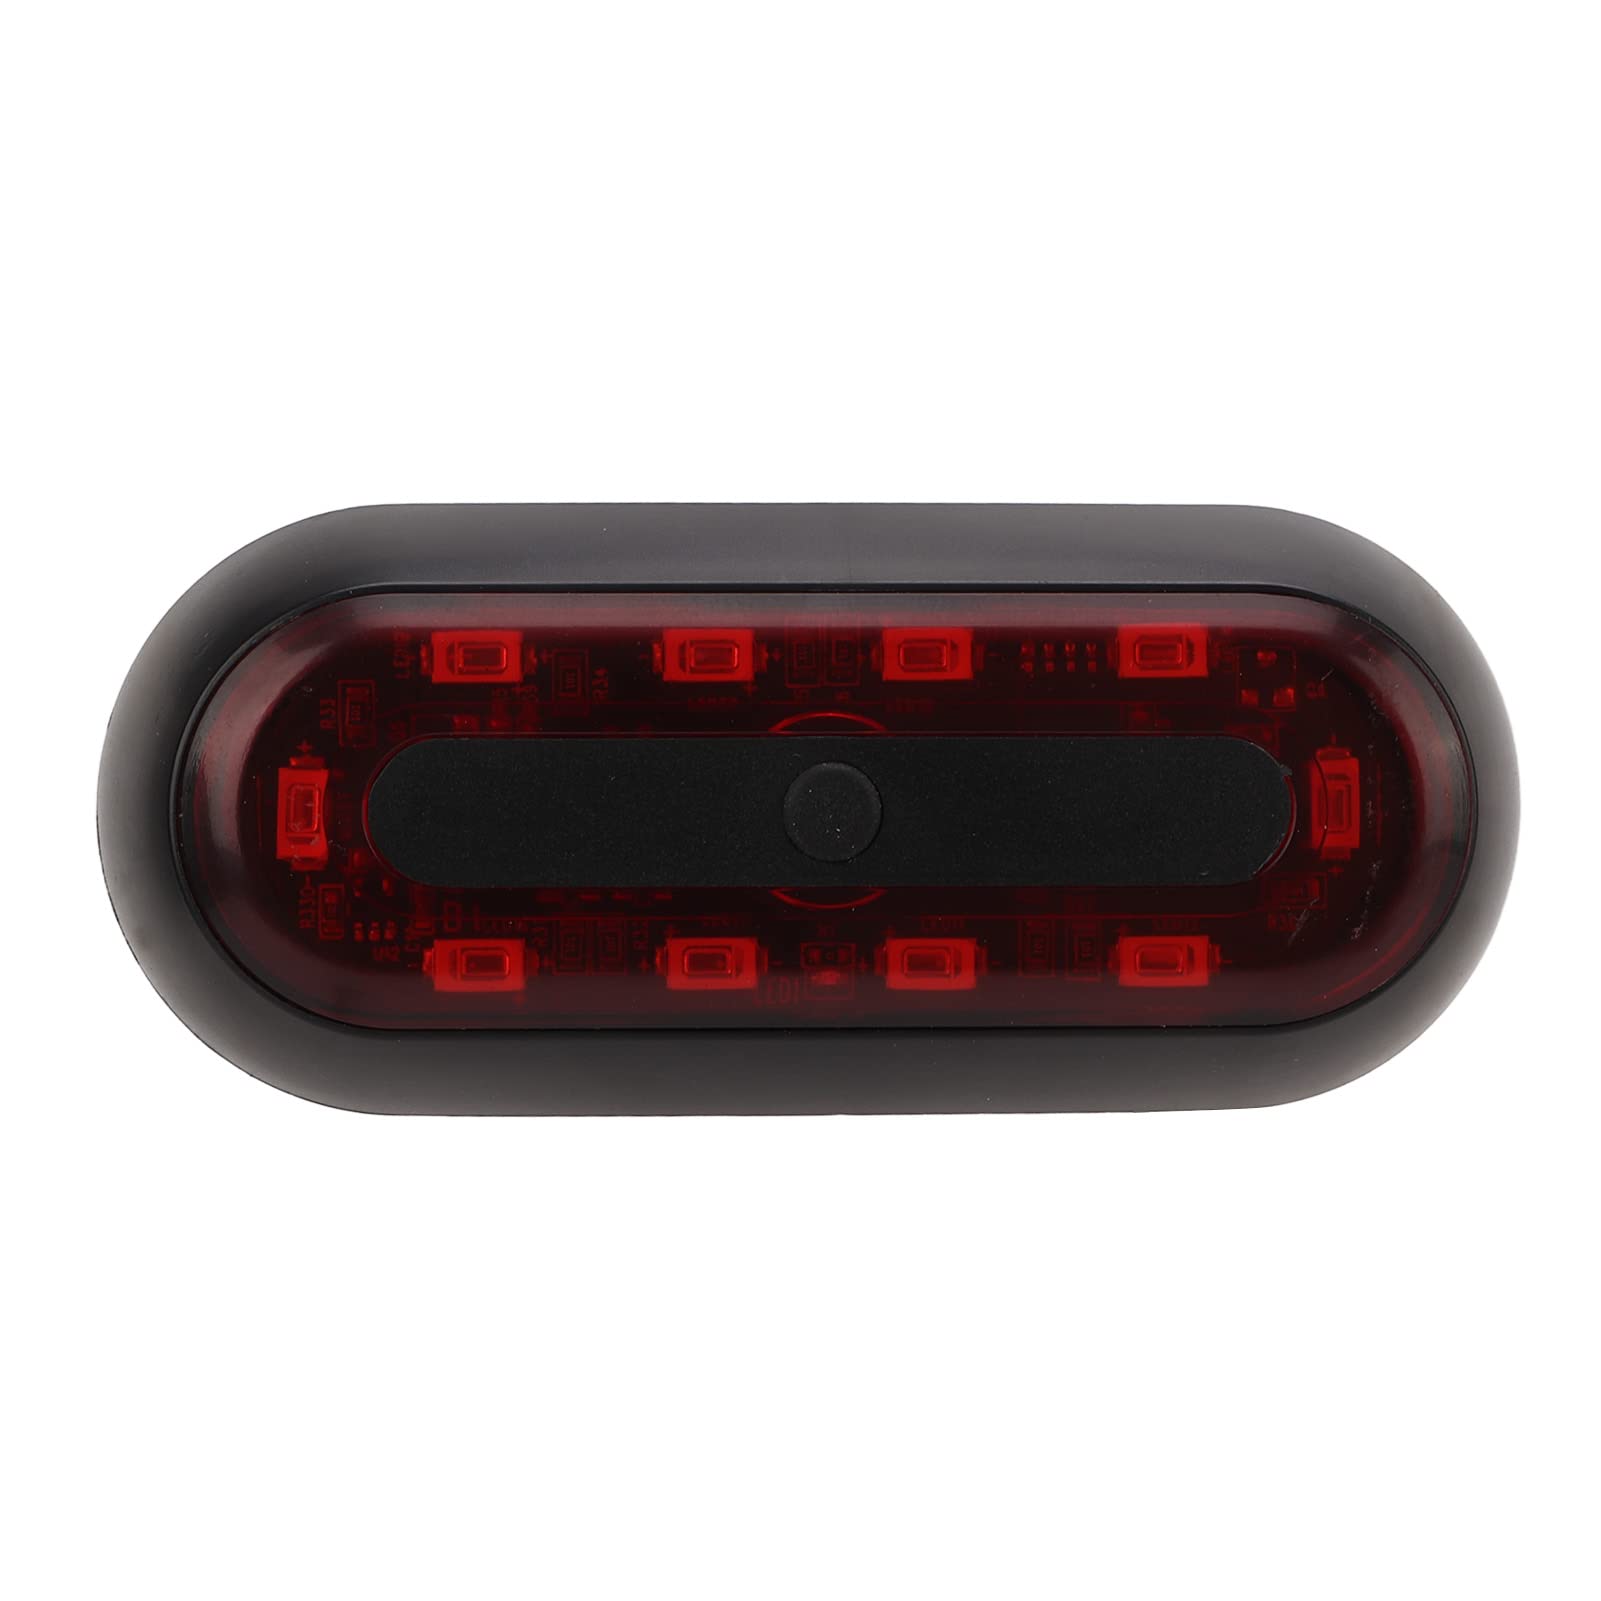 Hinteres Bremslicht Helmwarnlicht Einfache Bedienung Tragbar Leicht 3,7 V USB Wiederaufladbar von Hosi